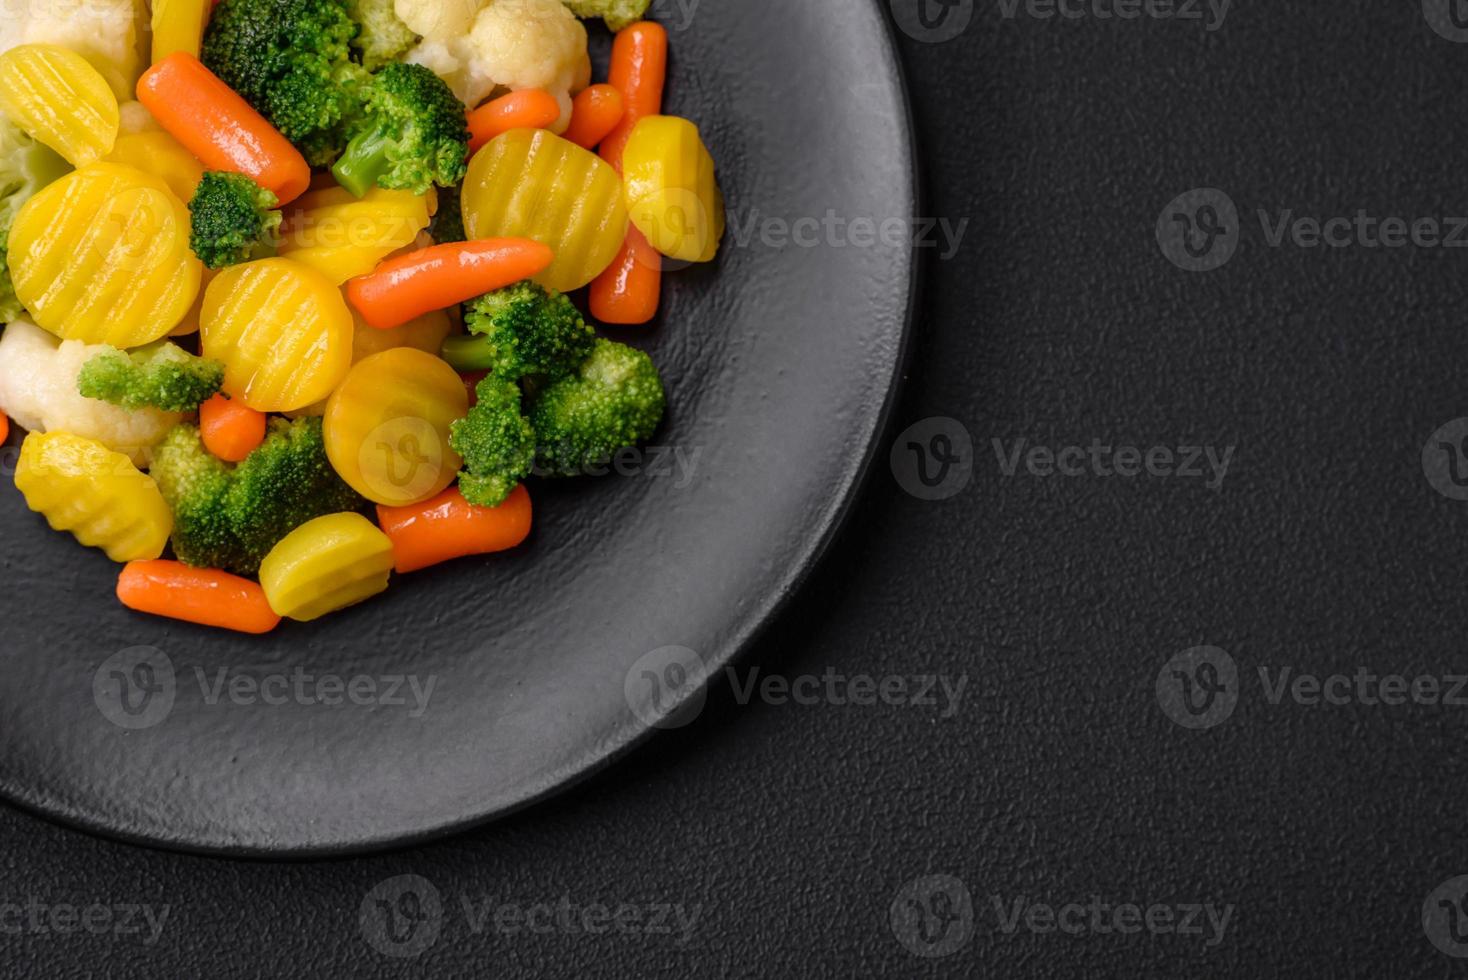 delicioso Fresco vegetales al vapor zanahorias, brócoli, coliflor en un negro plato foto